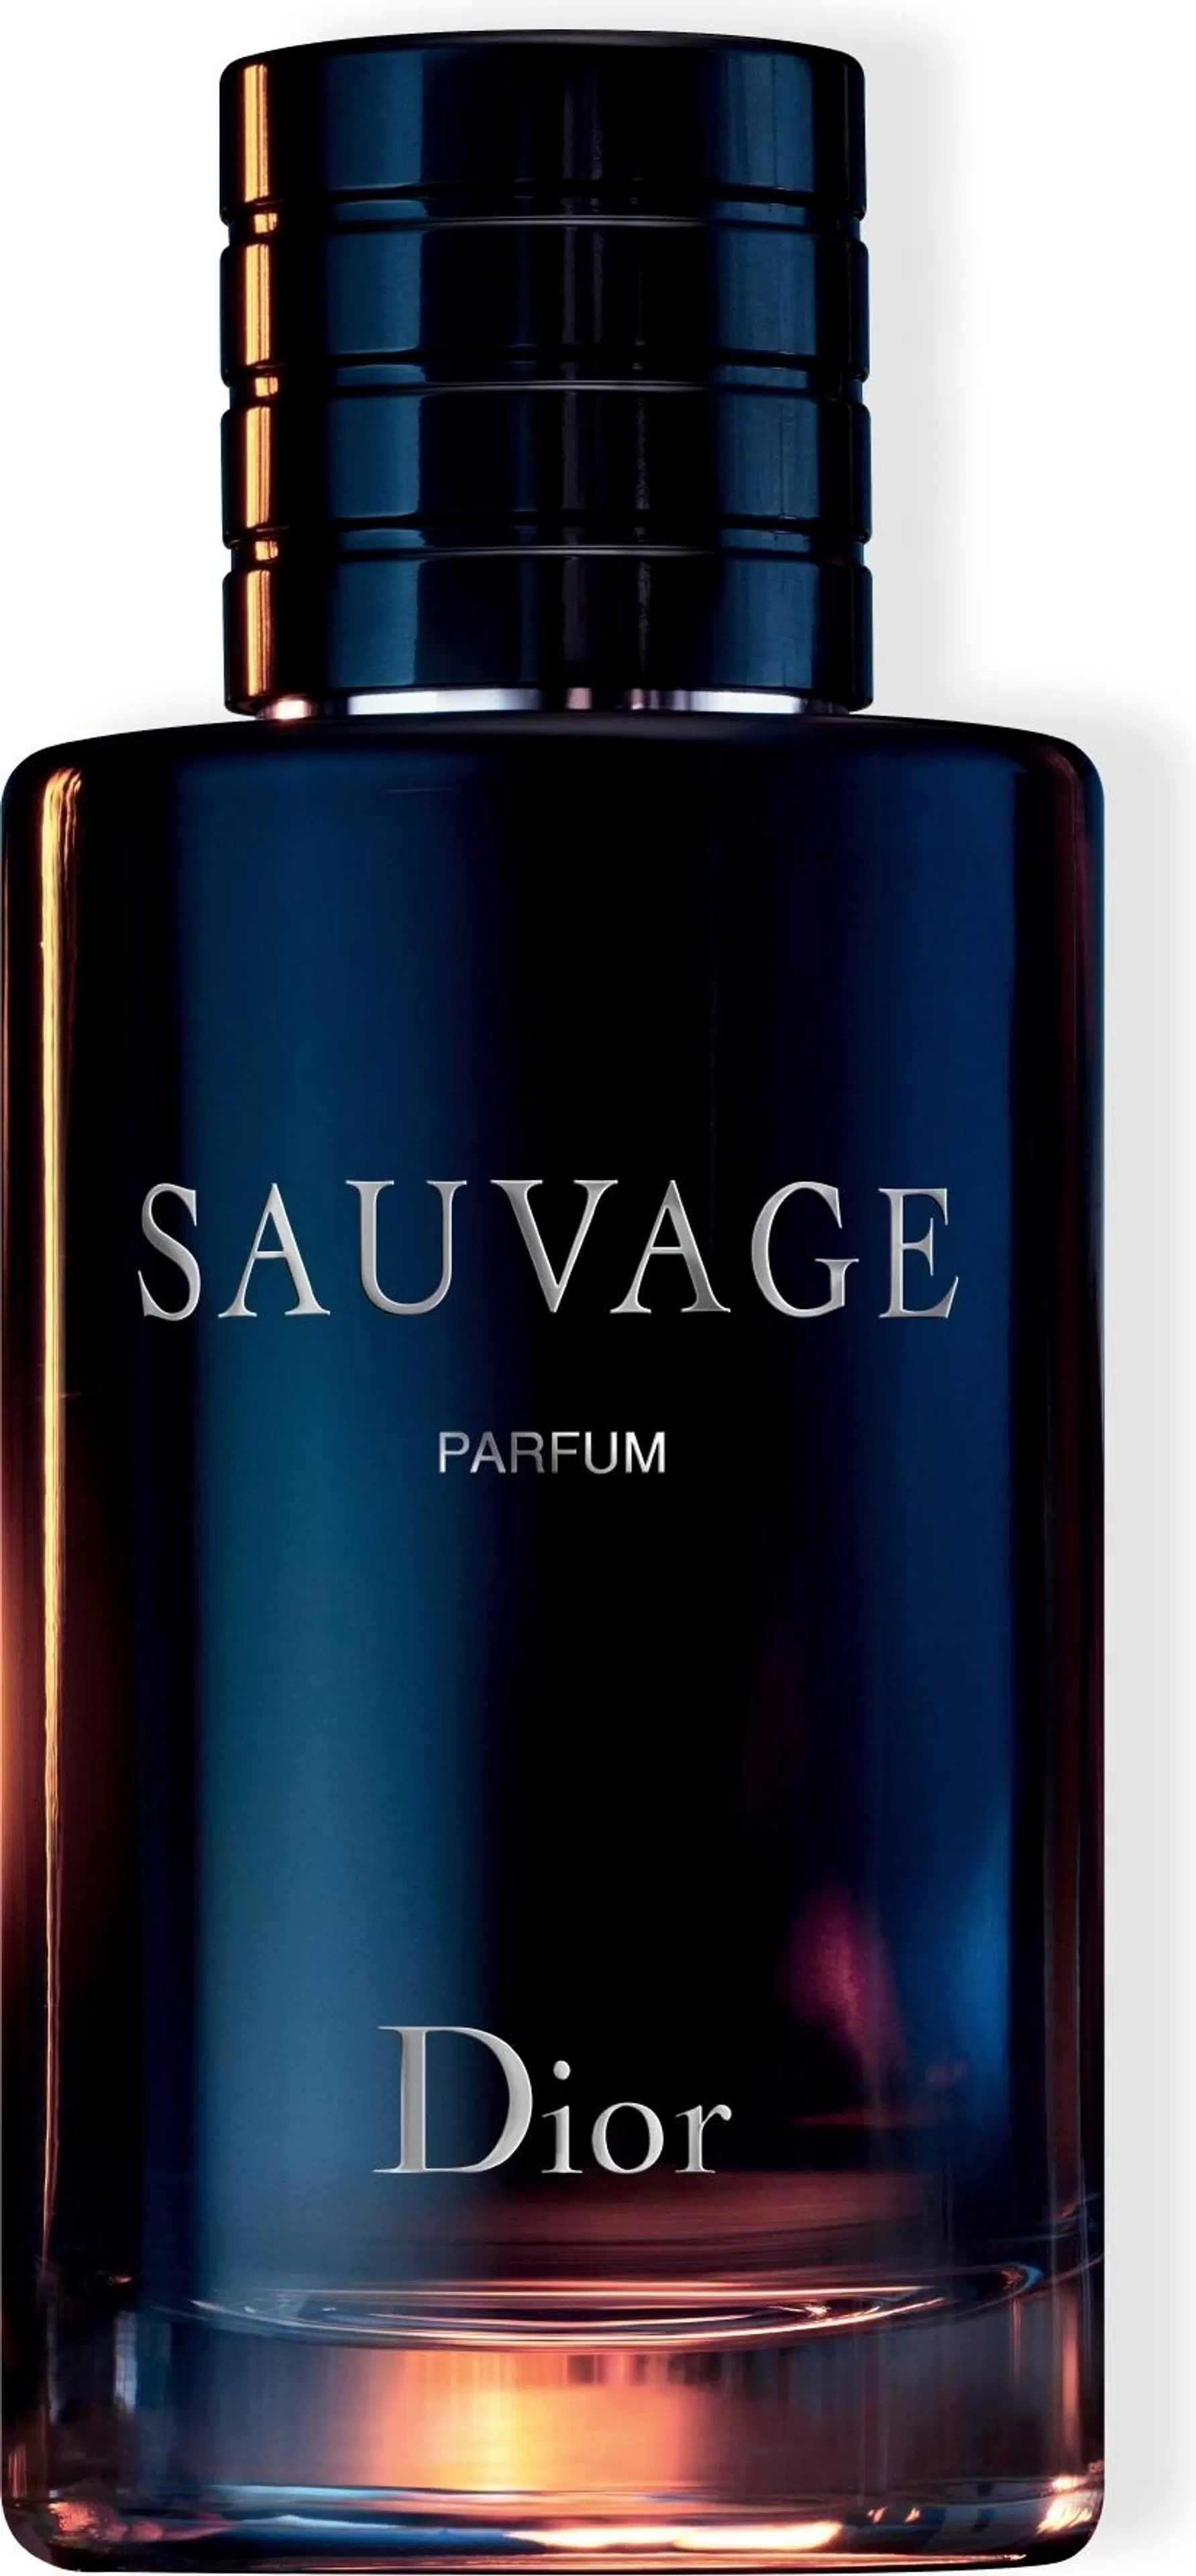 DIOR Sauvage Parfum tuoksu 200 ml